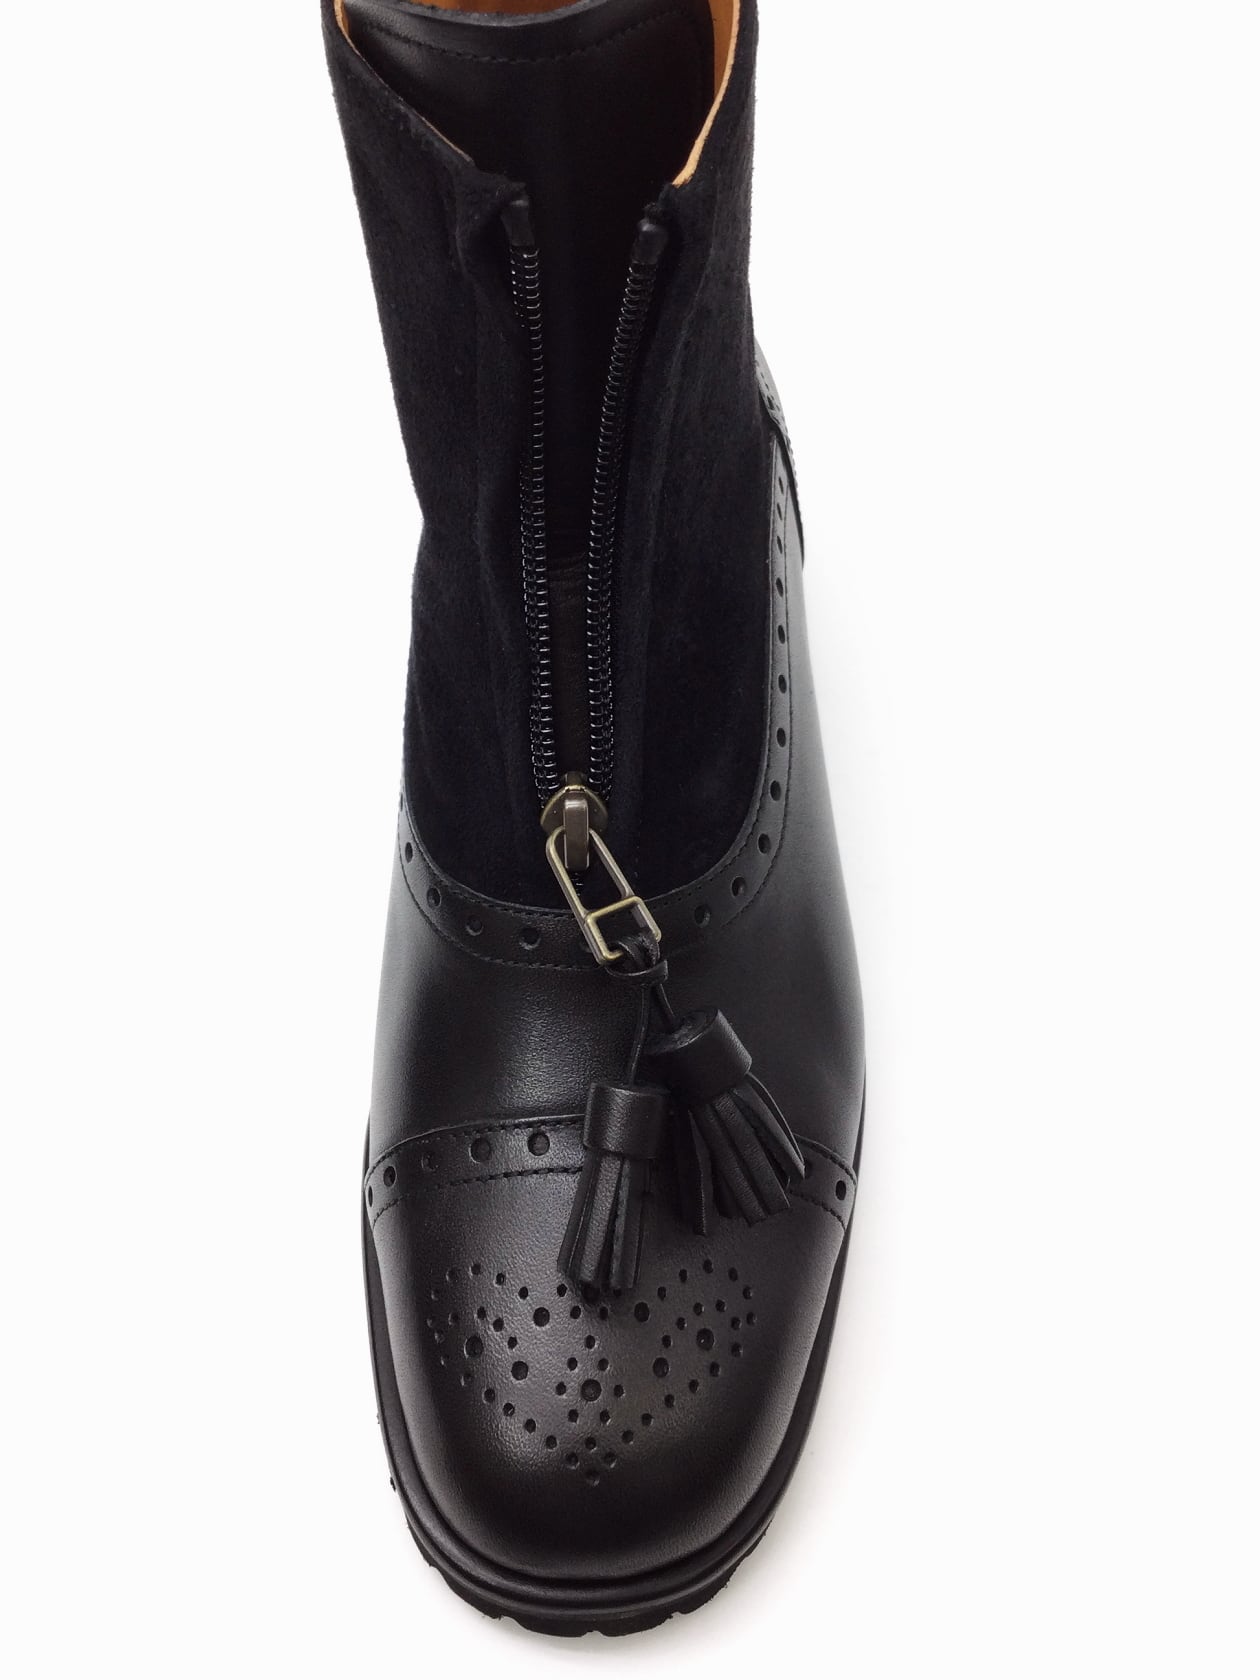 【ショセ】C-2317 ブラック BLACK レディース chausser ショートブーツ 靴 フロントジップブーツ